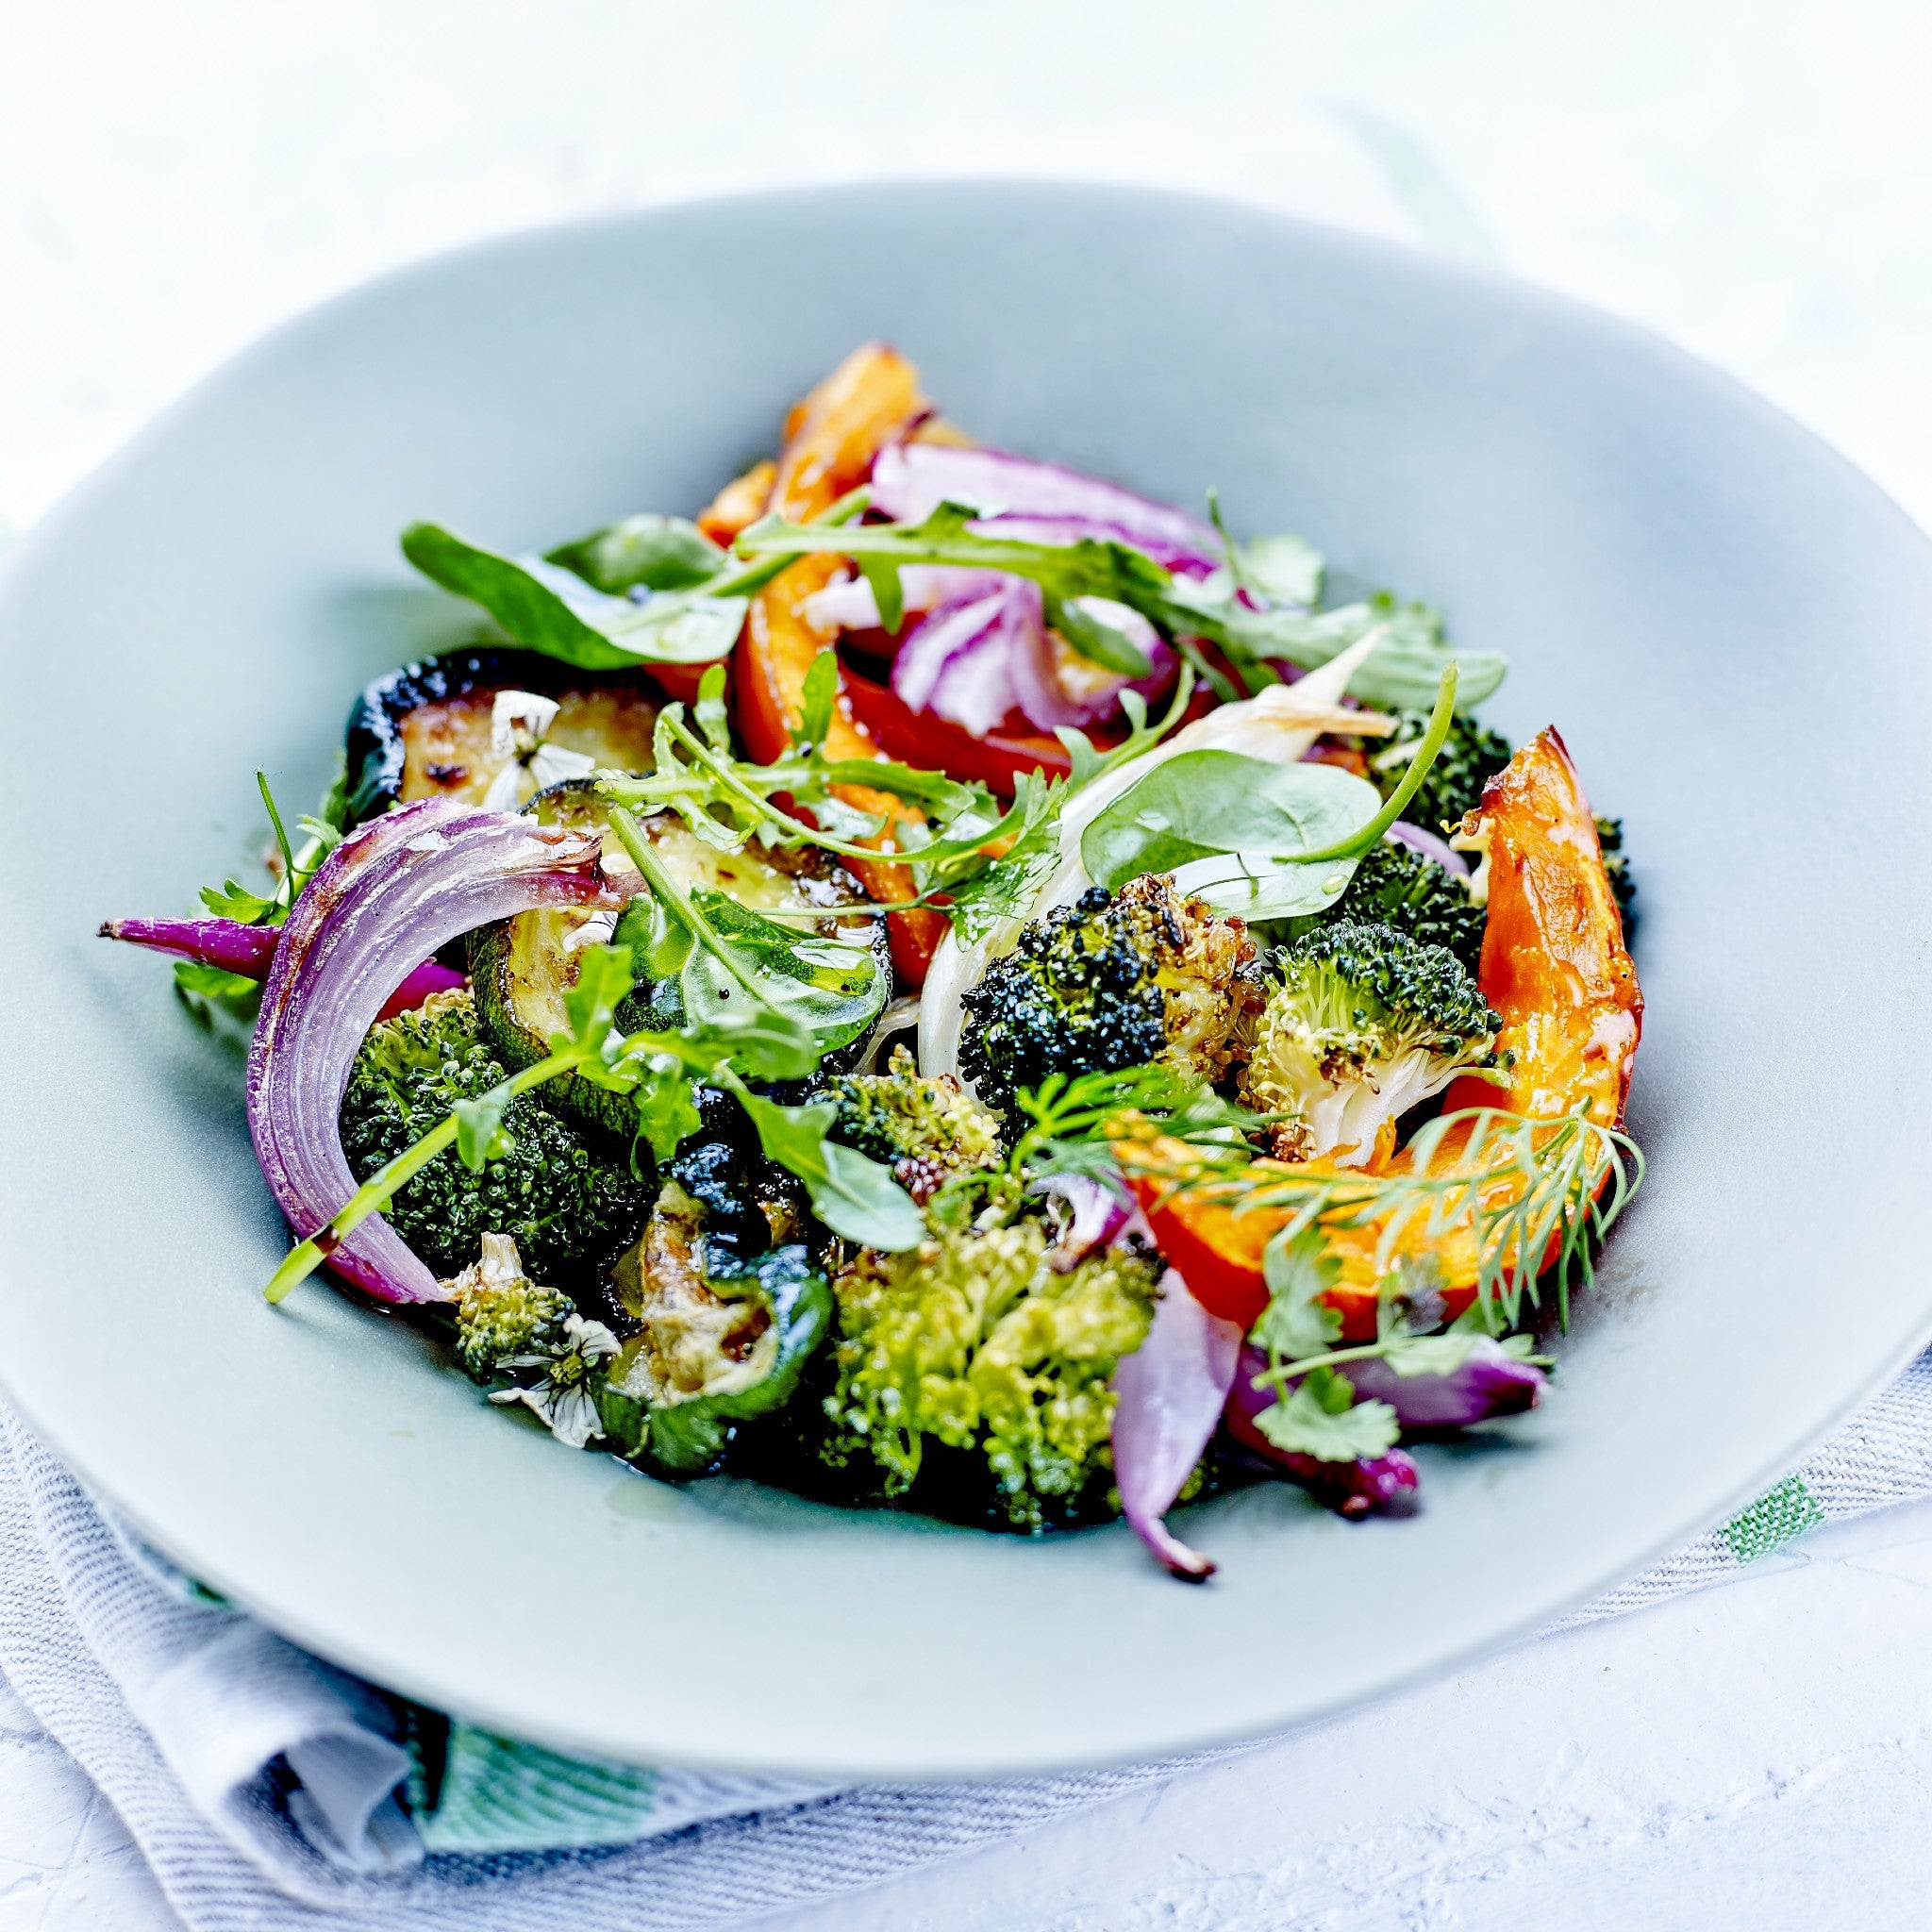 Salat med ovnbagte grøntsager, O&Co opskrift